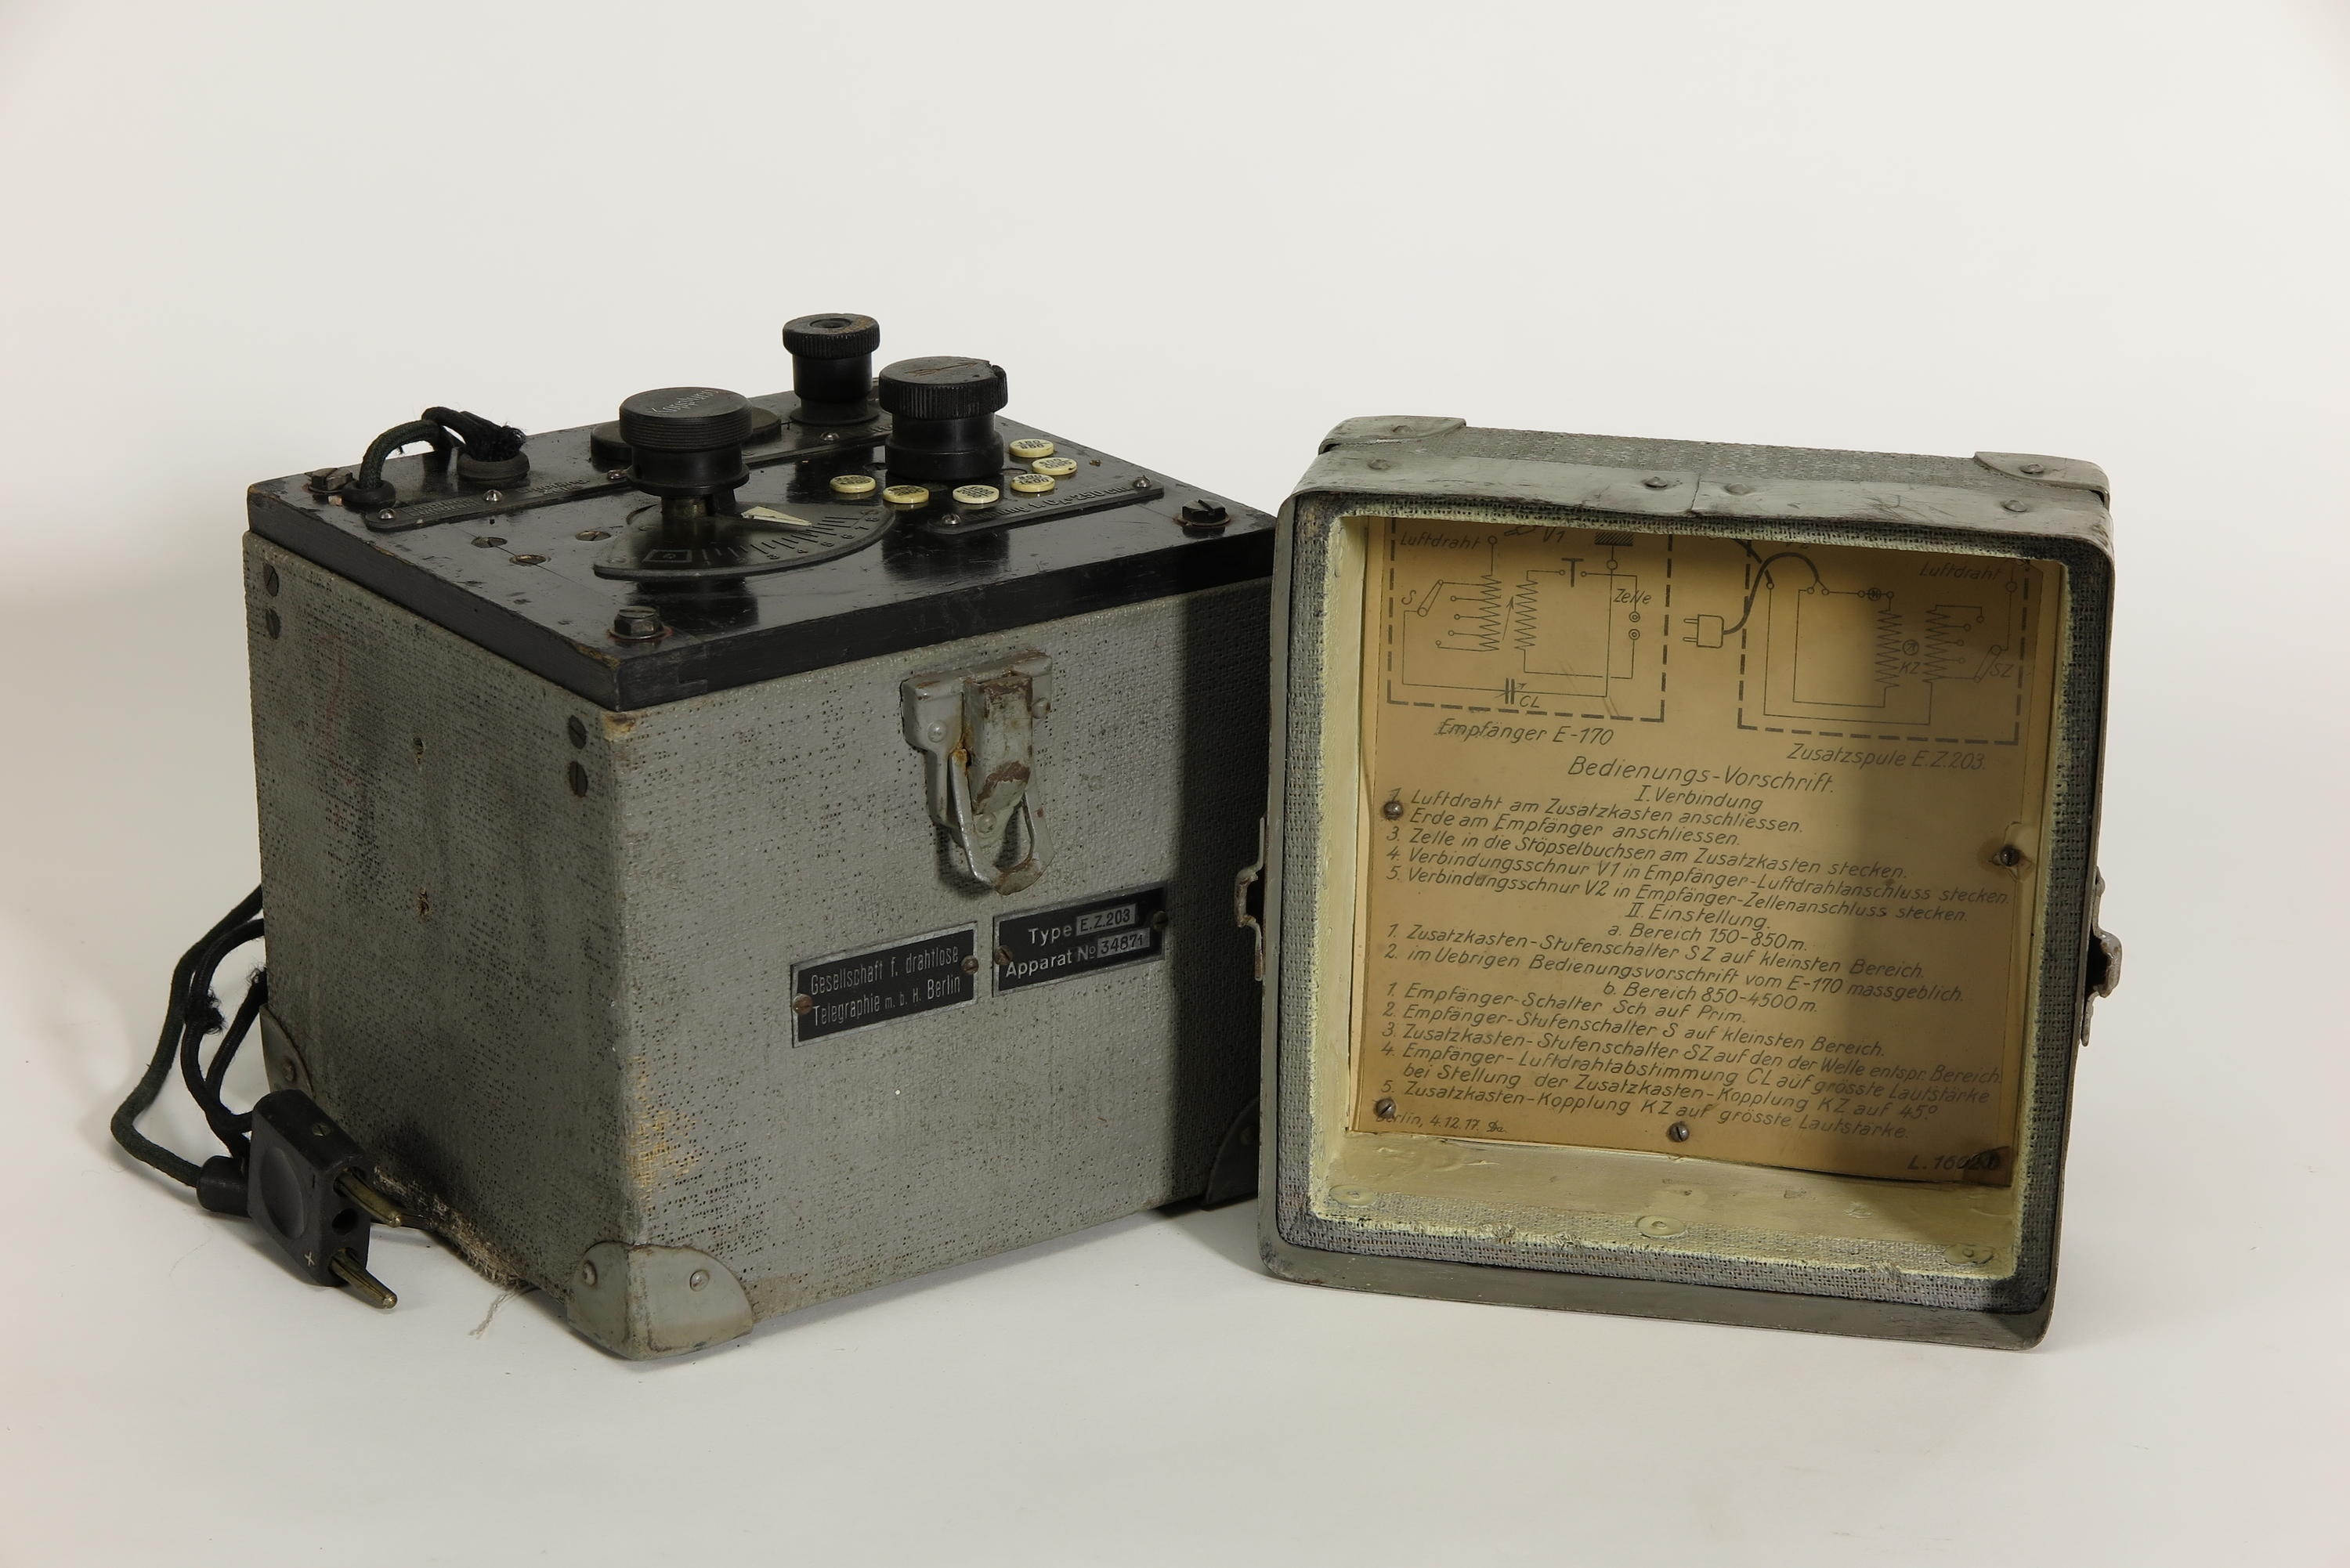 Zubehör zur Empfänger Telefunken E 170, Zusatzspule Telefunken E.Z.203 (Deutsches Technikmuseum CC BY)